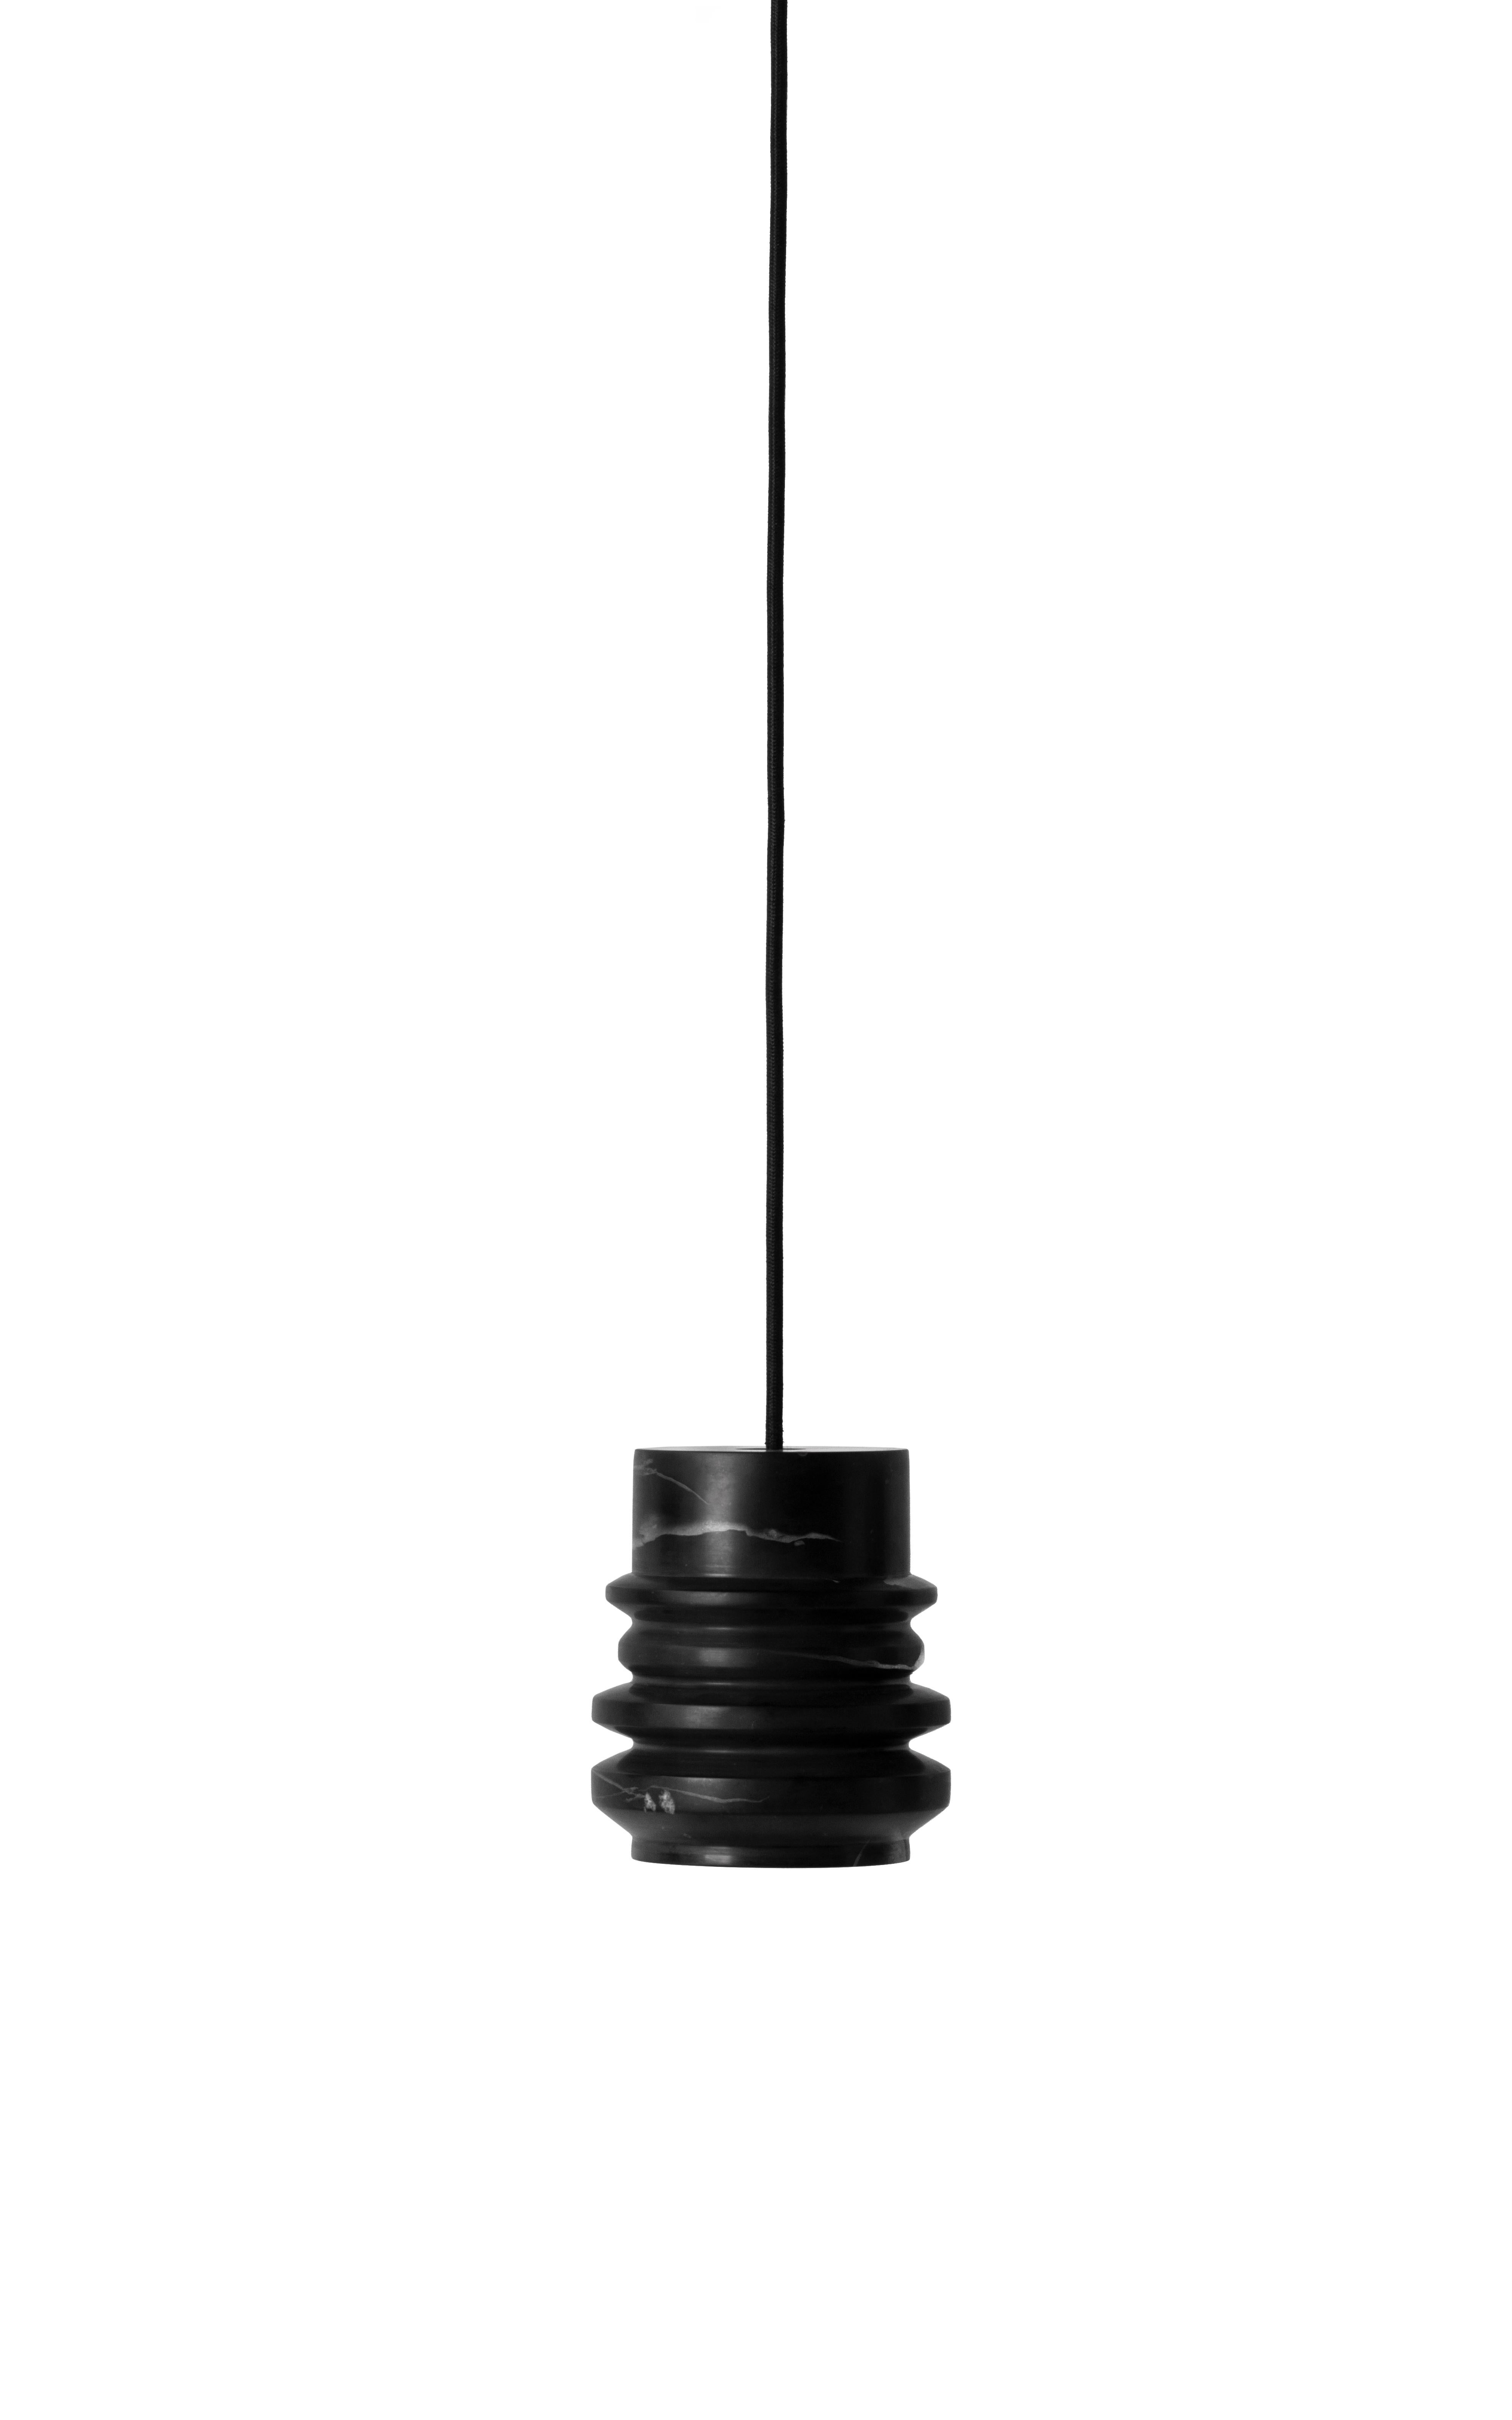 Hängeleuchte 'CIRCLE' von Buzao x Bentu design.
Schwarzer Marmor

Maße: 15 cm hoch, 13 cm Durchmesser
Kabel: 2 Meter schwarz (einstellbar)
Typ der Lampe: E27 LED 3W 100-240V 80Ra 200LM 2700K - Kompatibel mit US Stromnetz.
Deckenbaldachin 6,5 cm